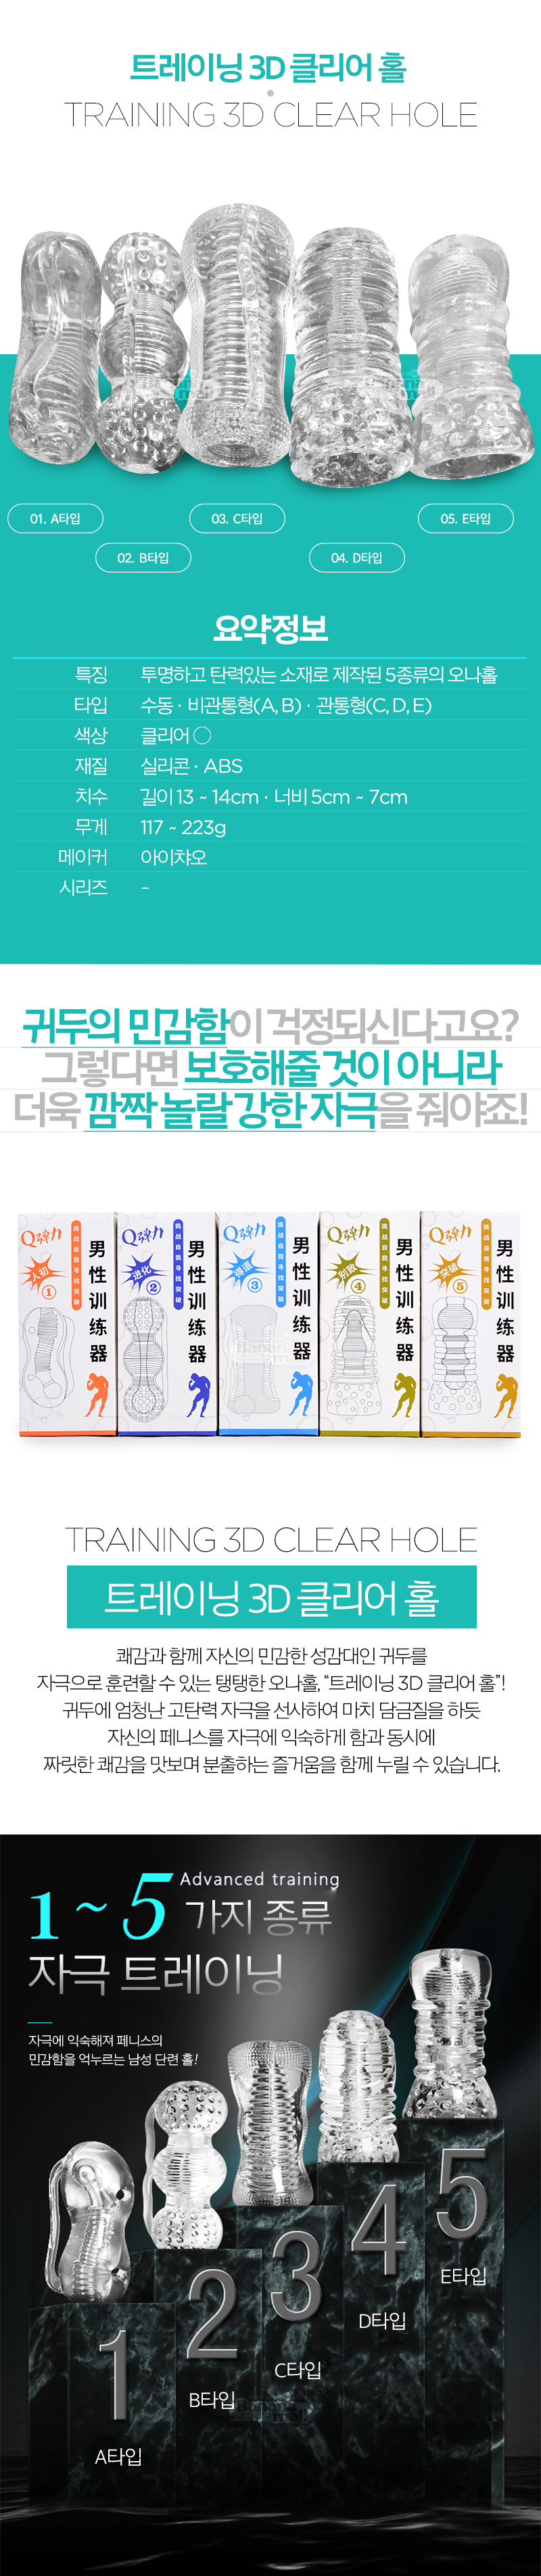 [투명 홀] 트레이닝 3D 클리어 홀(Training 3D Clear Hole)